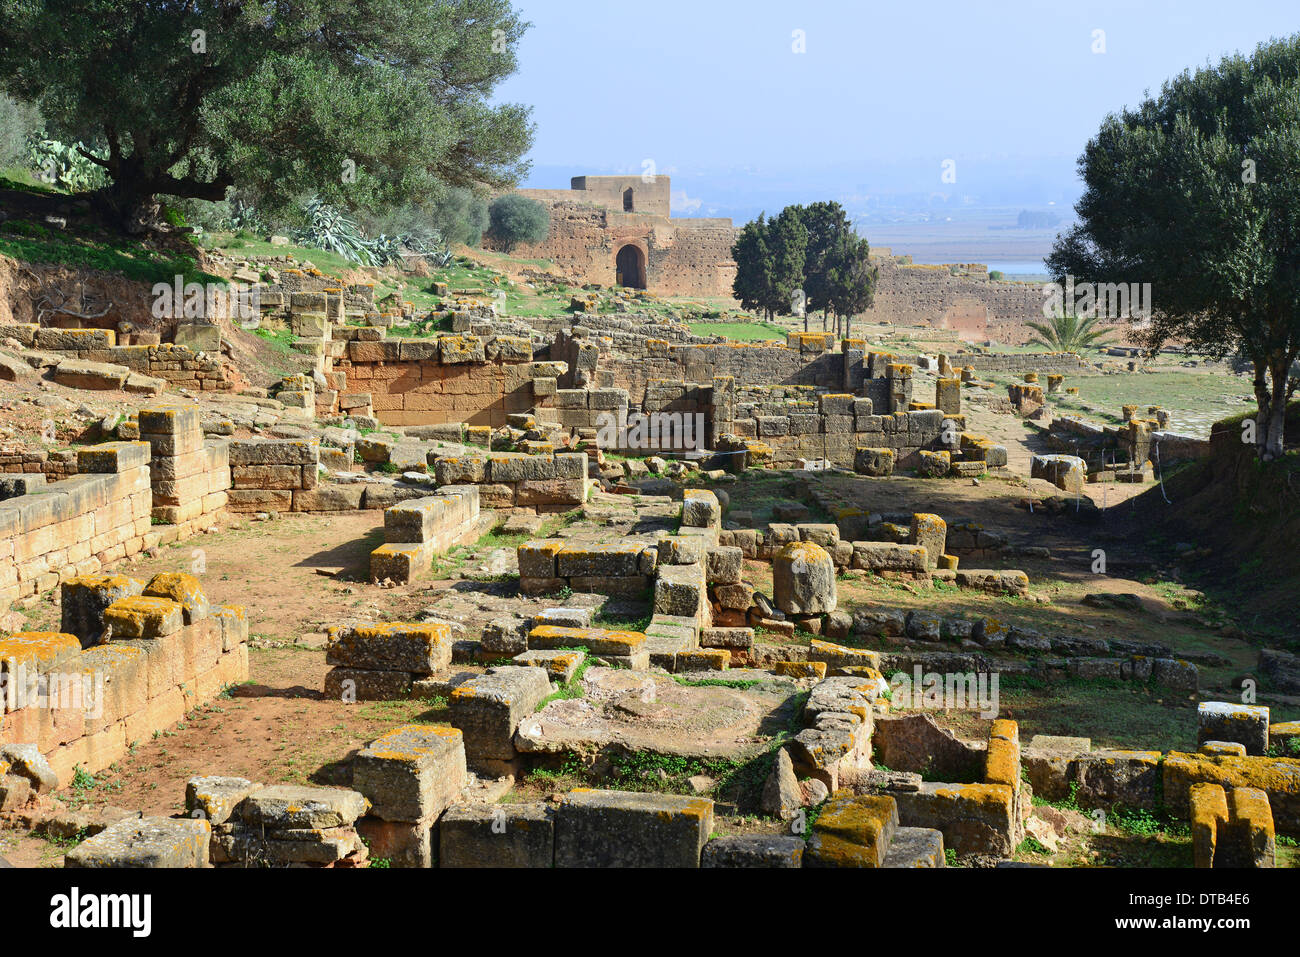 Chellah (Sala Colonia) sito archeologico romano, Rabat, Rabat-Salé-Zemmour-Zaer regione, il Regno del Marocco Foto Stock